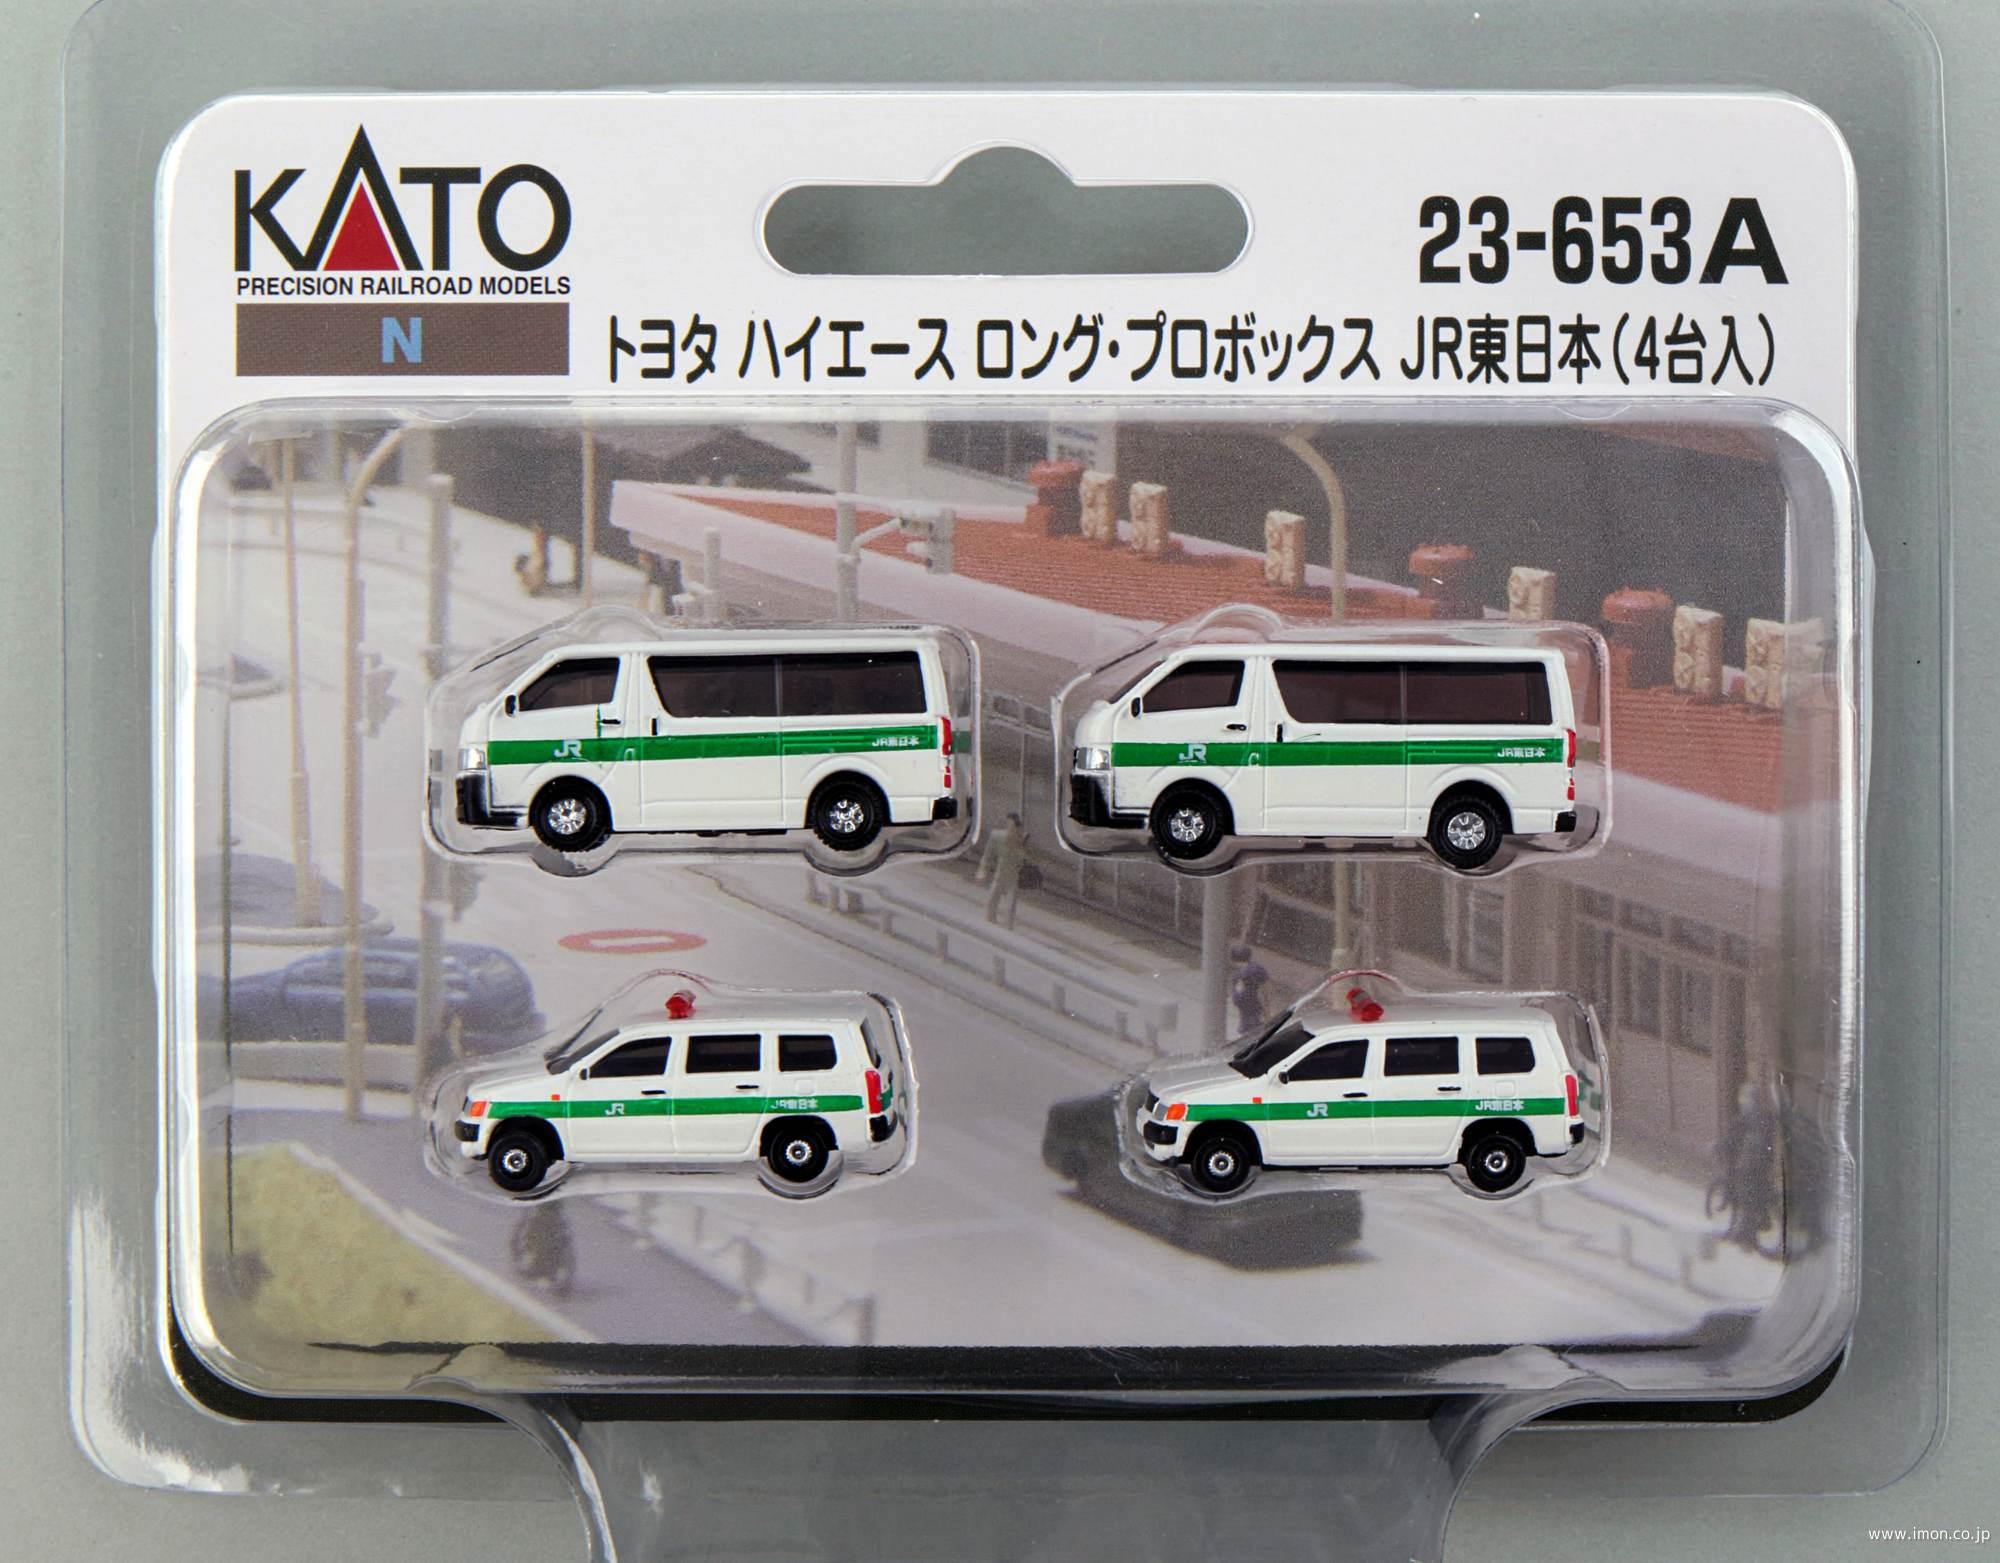 トヨタハイエースロング・プロボックス JR東日本(4台入)